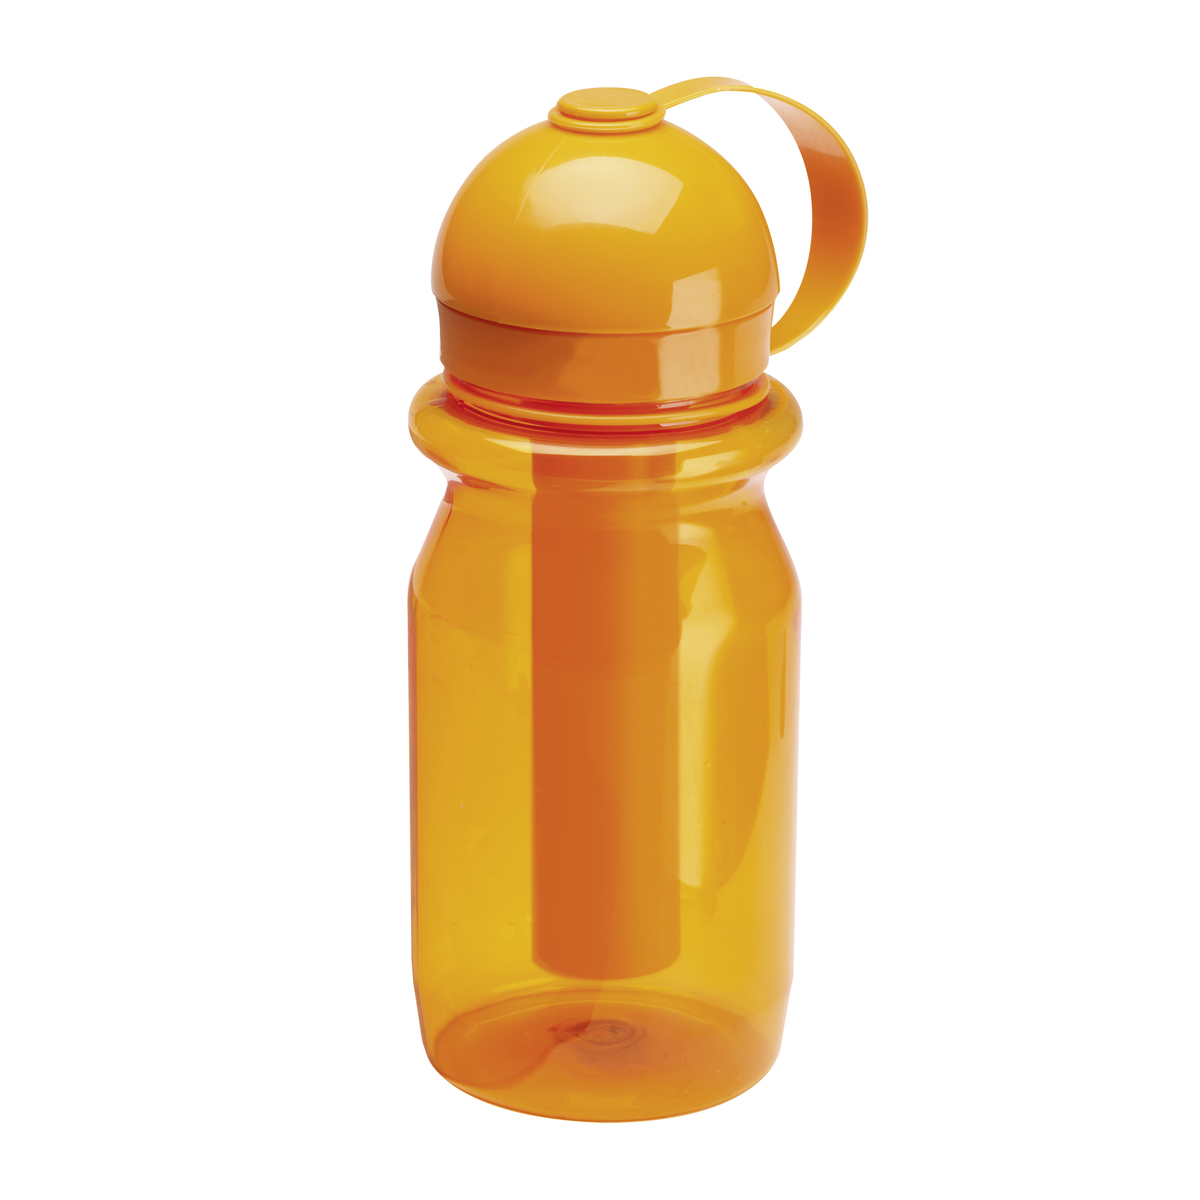 LM Flasche REFLECTS-OTTAWA ORANGE orange